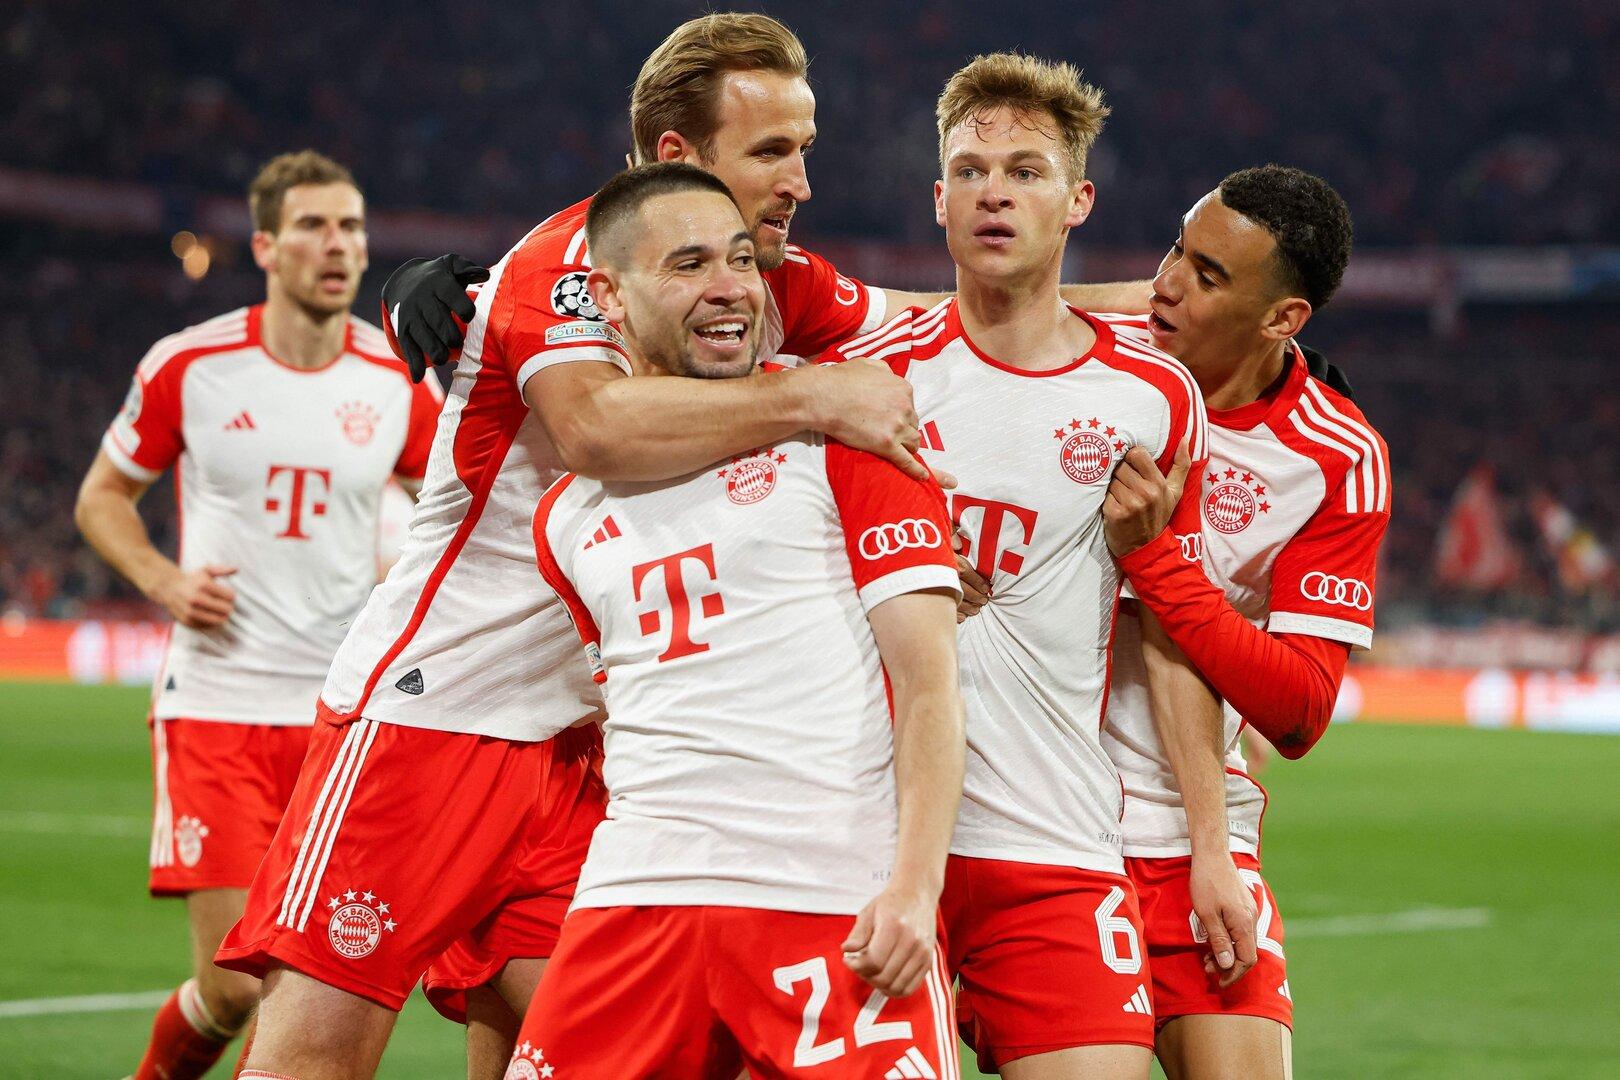 Bayern schlägt Arsenal und beschert Salzburg 50 Millionen Euro